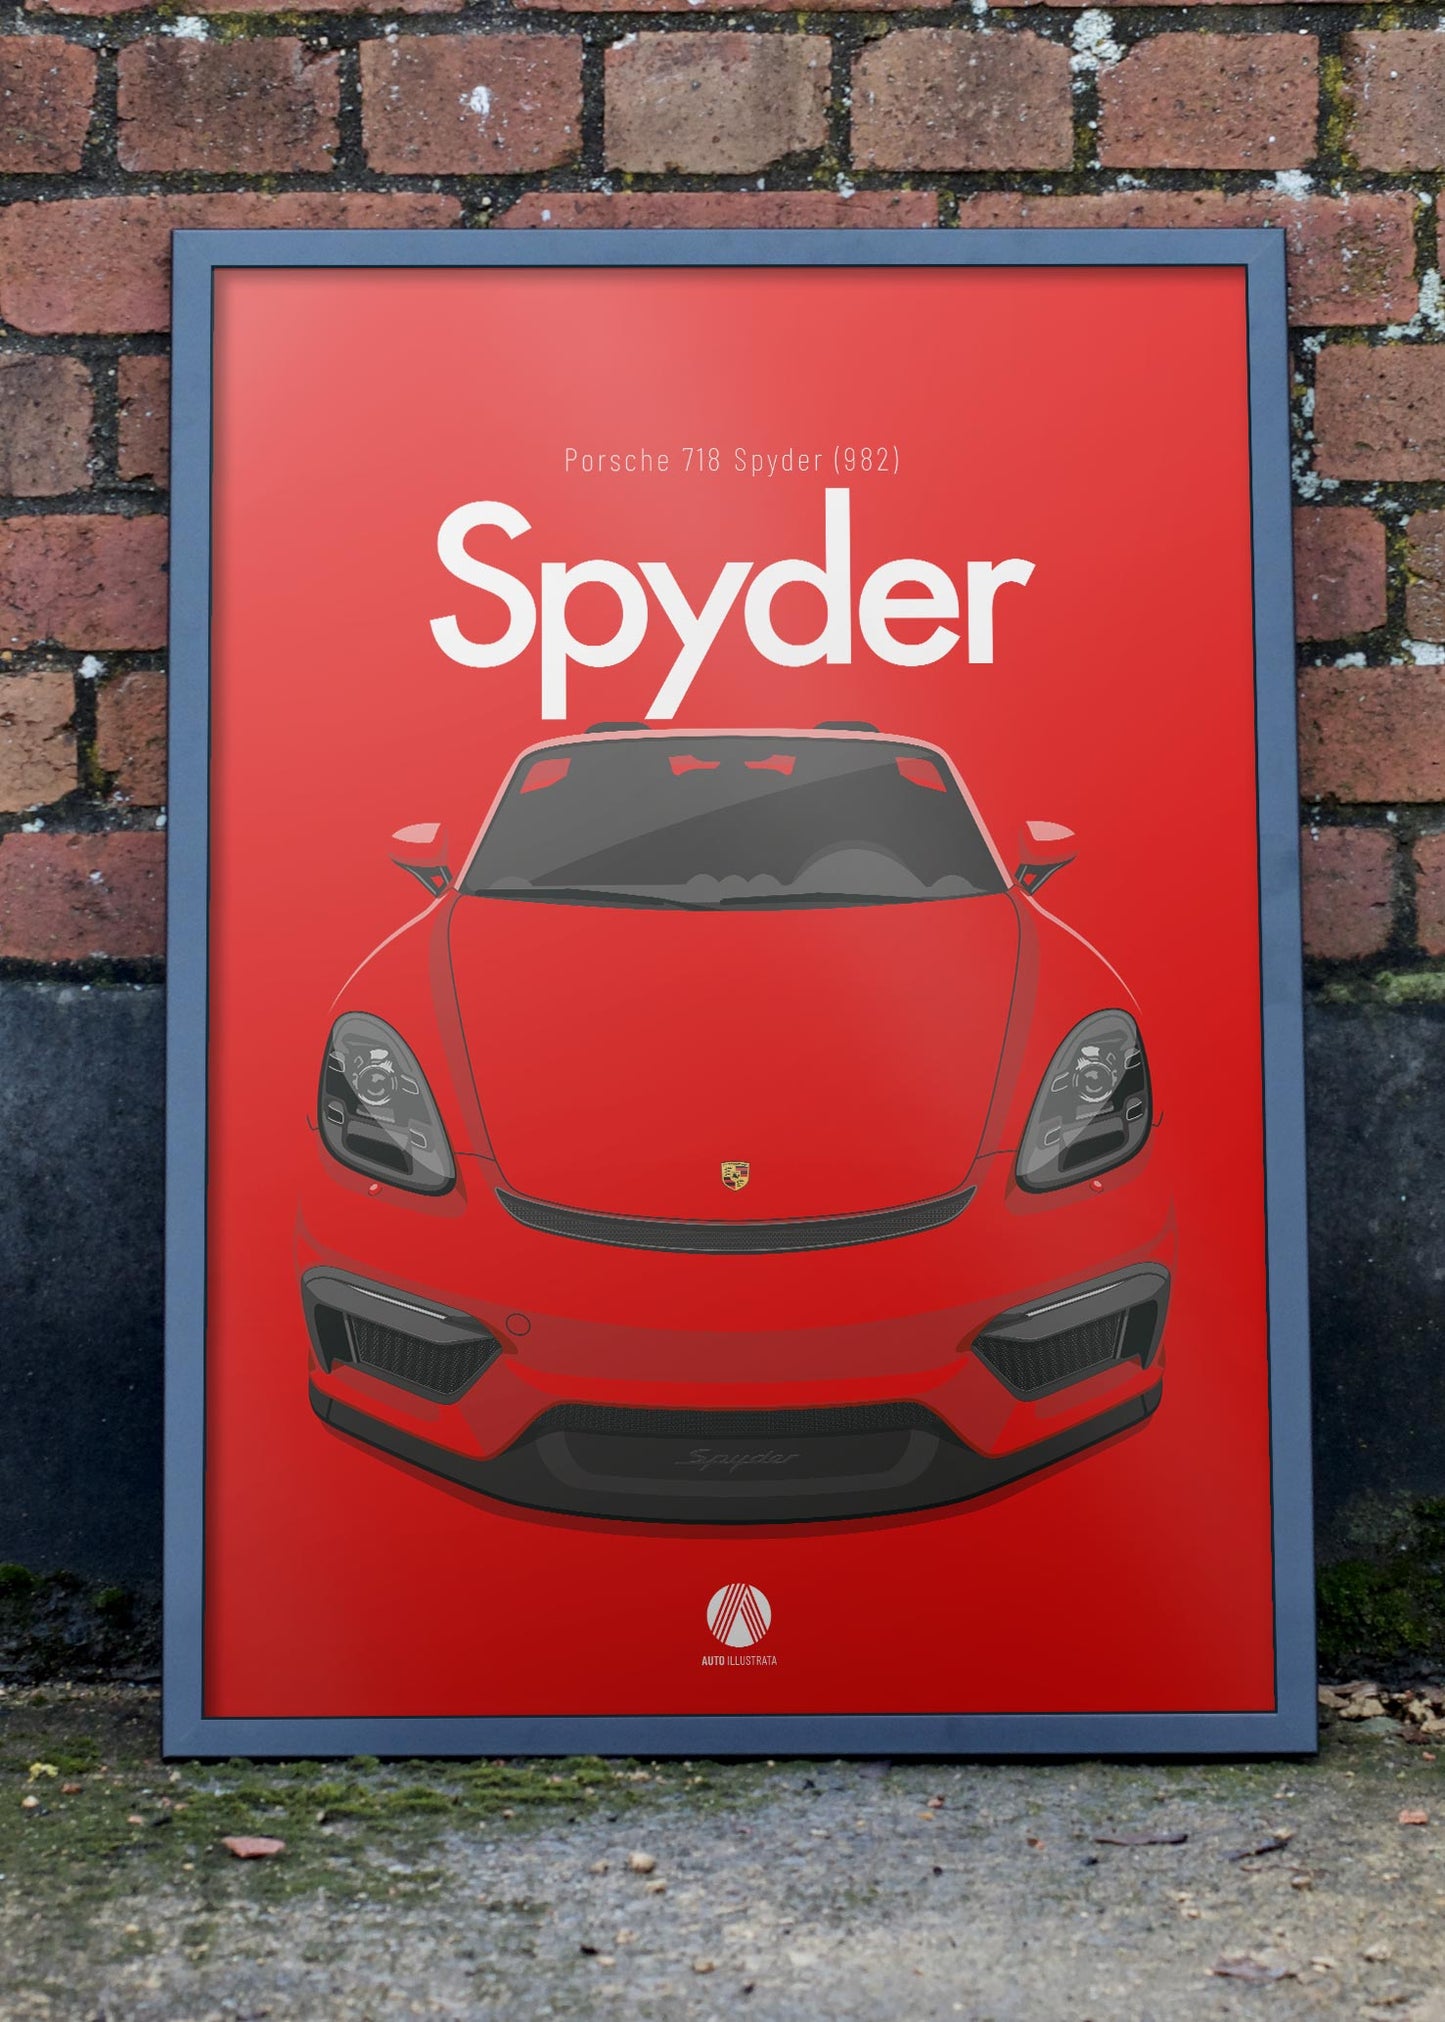 2020 Porsche 718 Spyder (982) - Guards Red - poster print